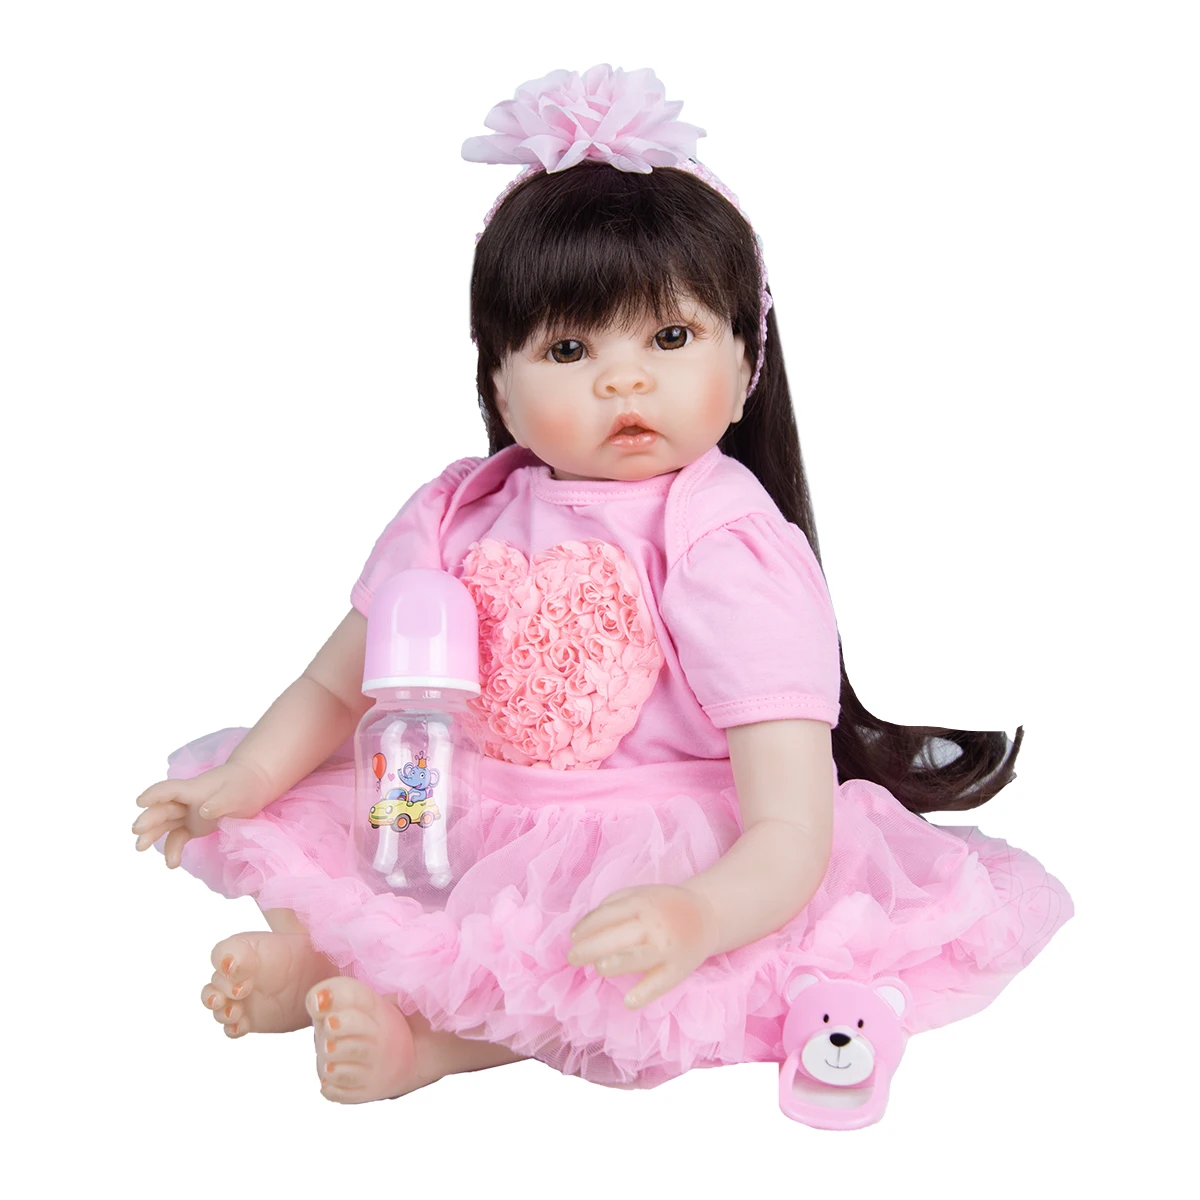 Dlhé Účesy 55 Cm Batoľa Reborn Baby Doll Odbavenie Látkové Telo Dievča Reborn Baby Doll Playmates Hračka Pre Deti, Deň Dary 4